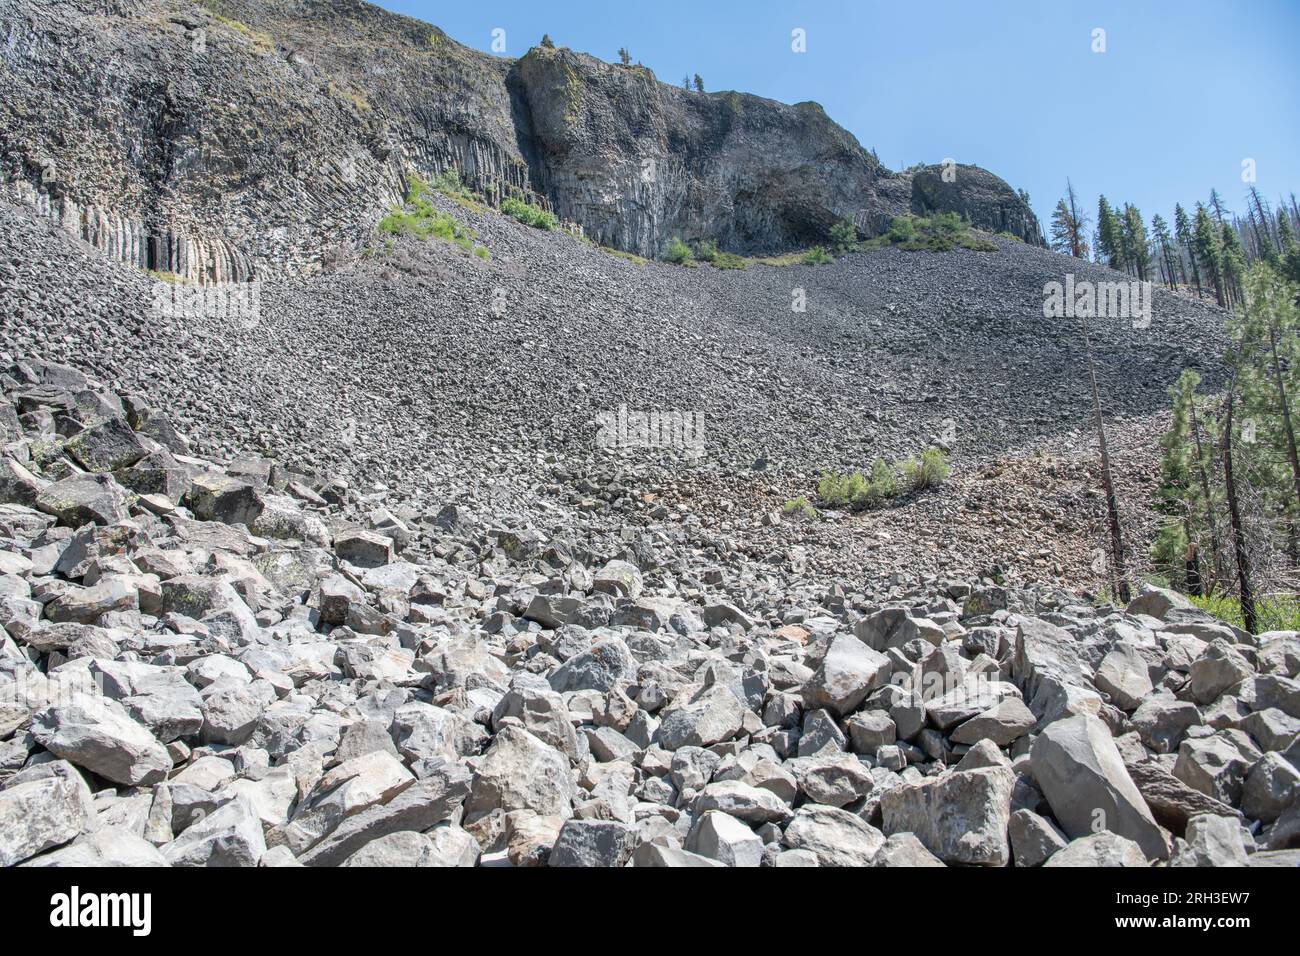 Formations rocheuses basaltiques dans les colonnes des géants, une caractéristique géologique inhabituelle du col de Sonora dans les montagnes de la Sierra Nevada en Californie. Banque D'Images